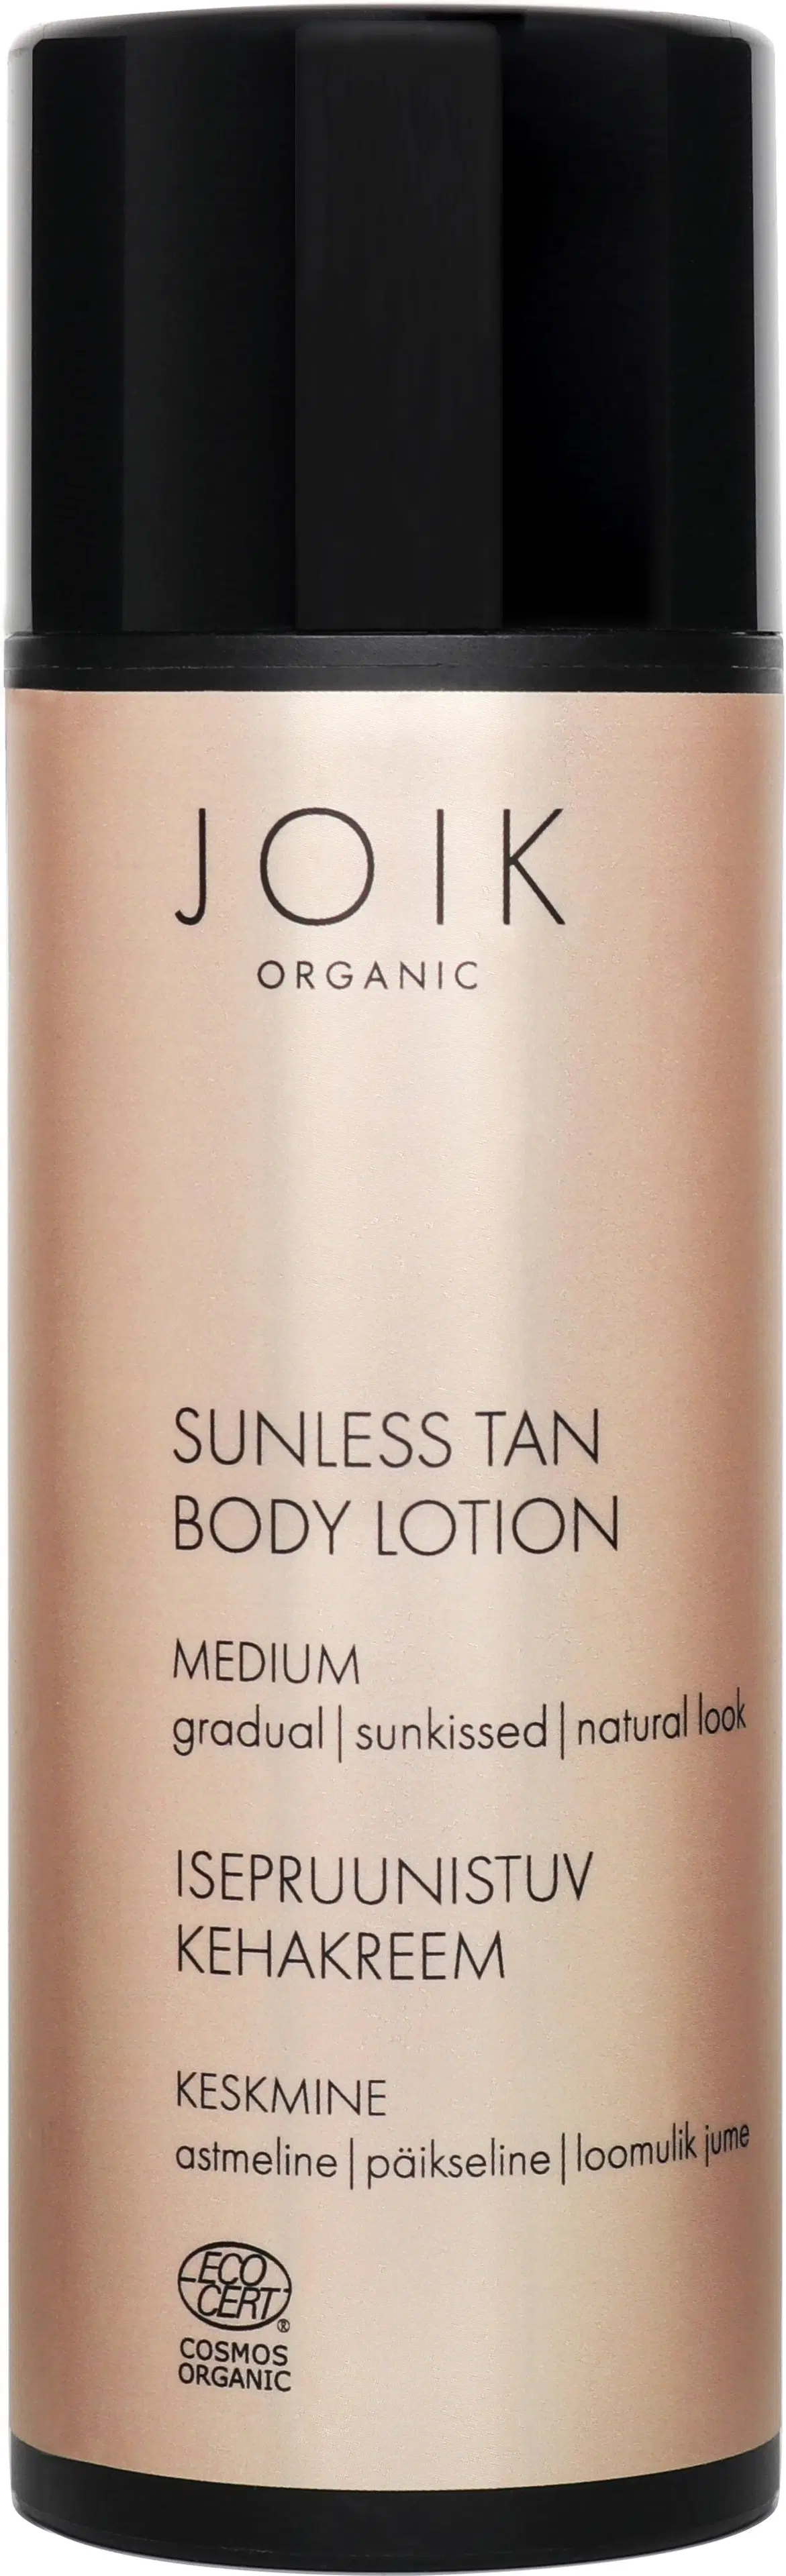 JOIK Organic Sunless Tan Body Lotion Itseruskettava voide Medium 150 ml